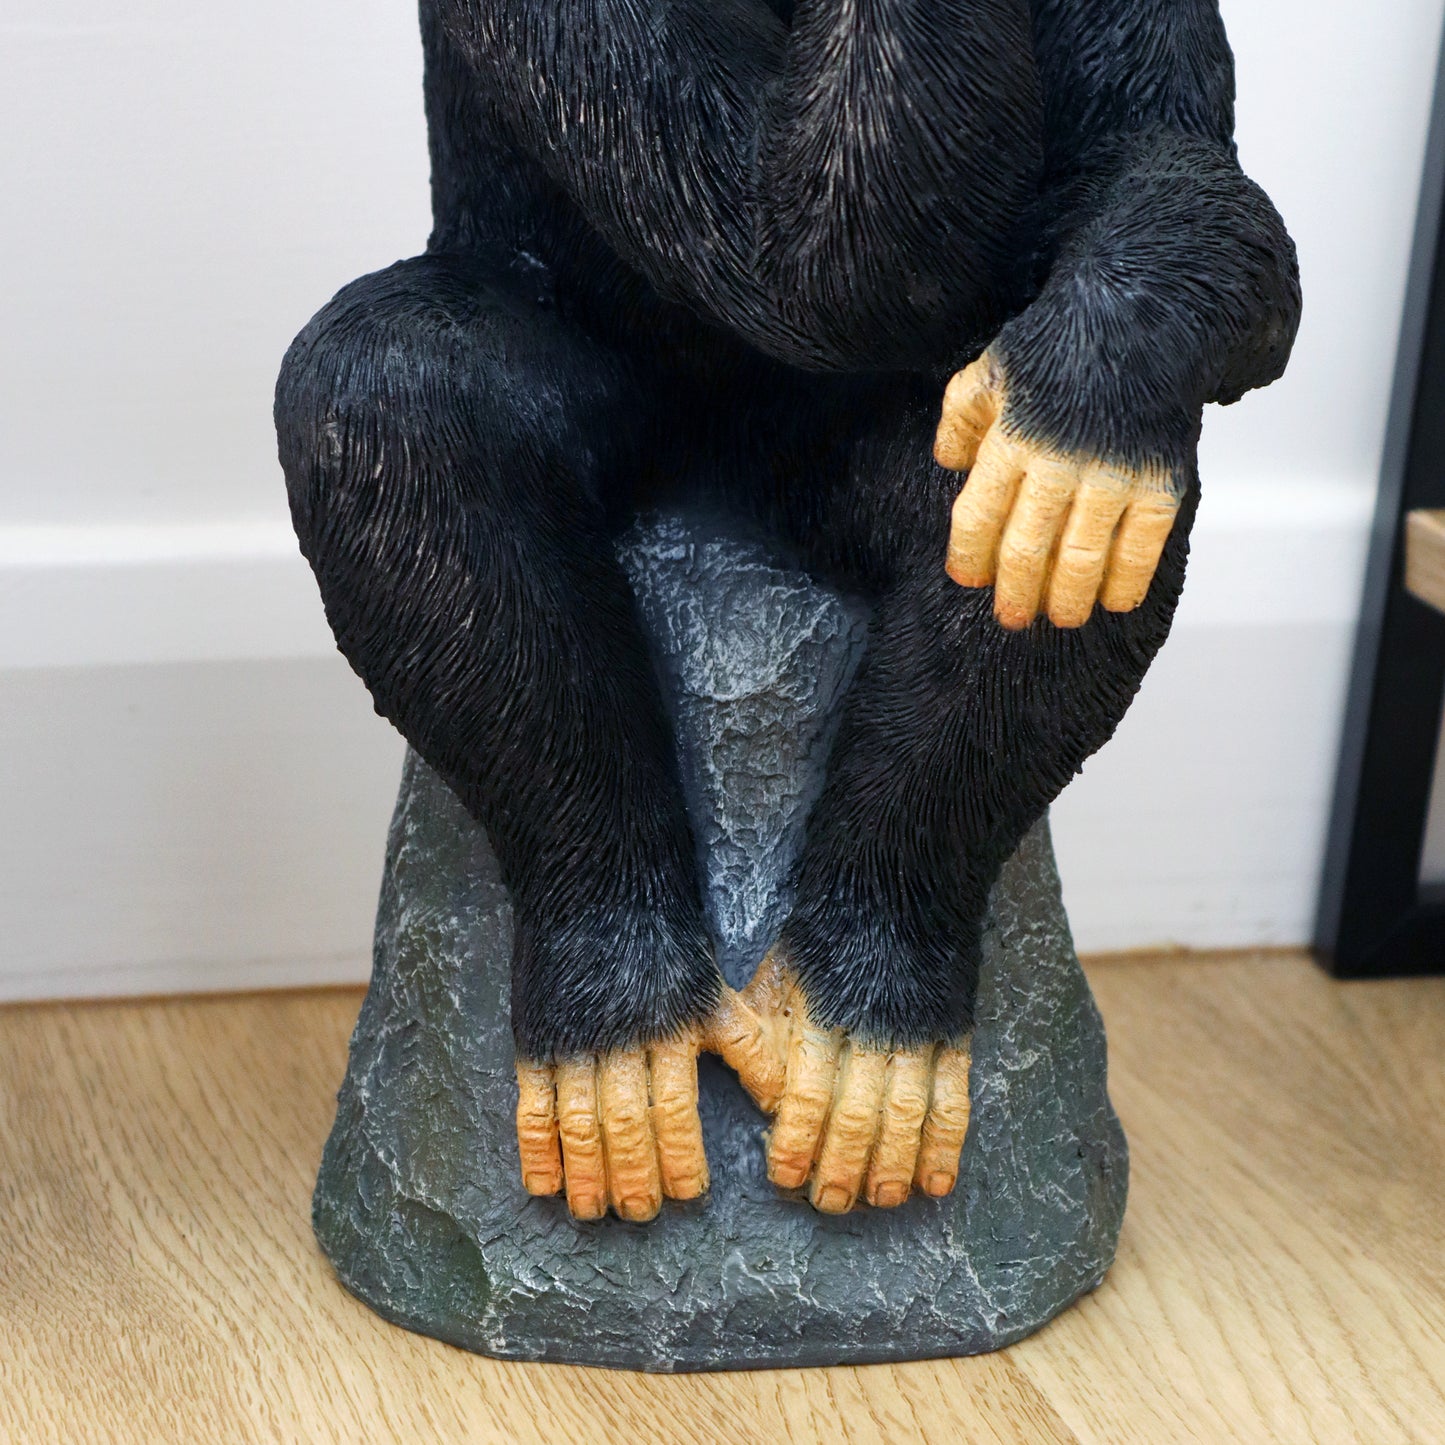 Anspruchsvolles Affen-Ornament